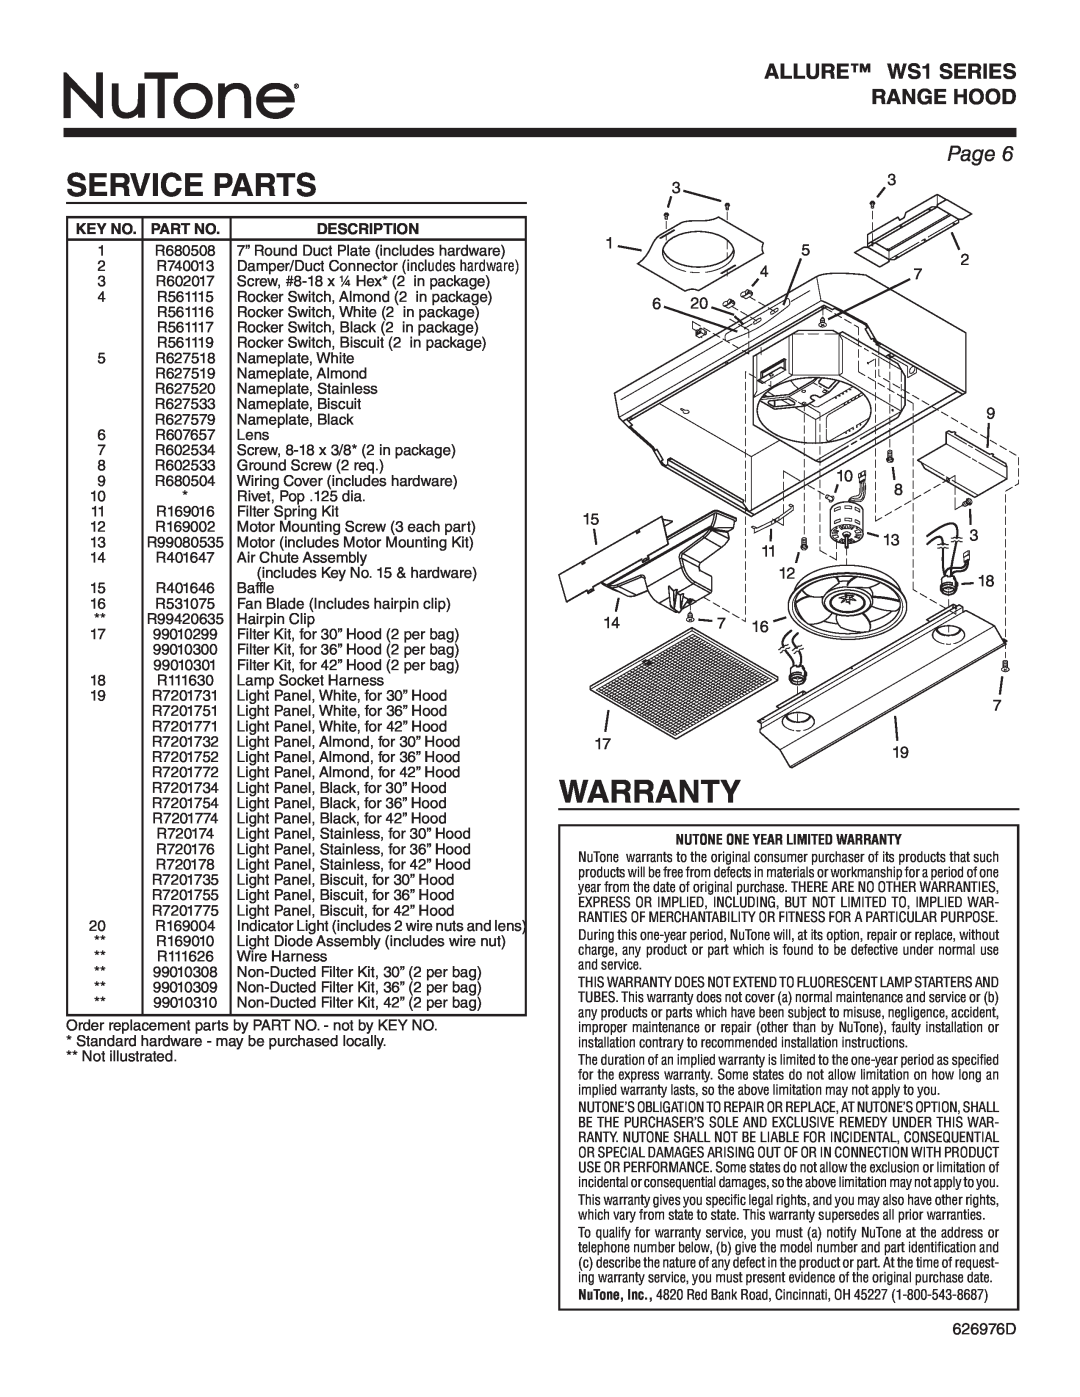 NuTone WS1 SERIES, WS130AA warranty Service Parts, Page, Key No. Part No, Description, Nutone One Year Limited Warranty 